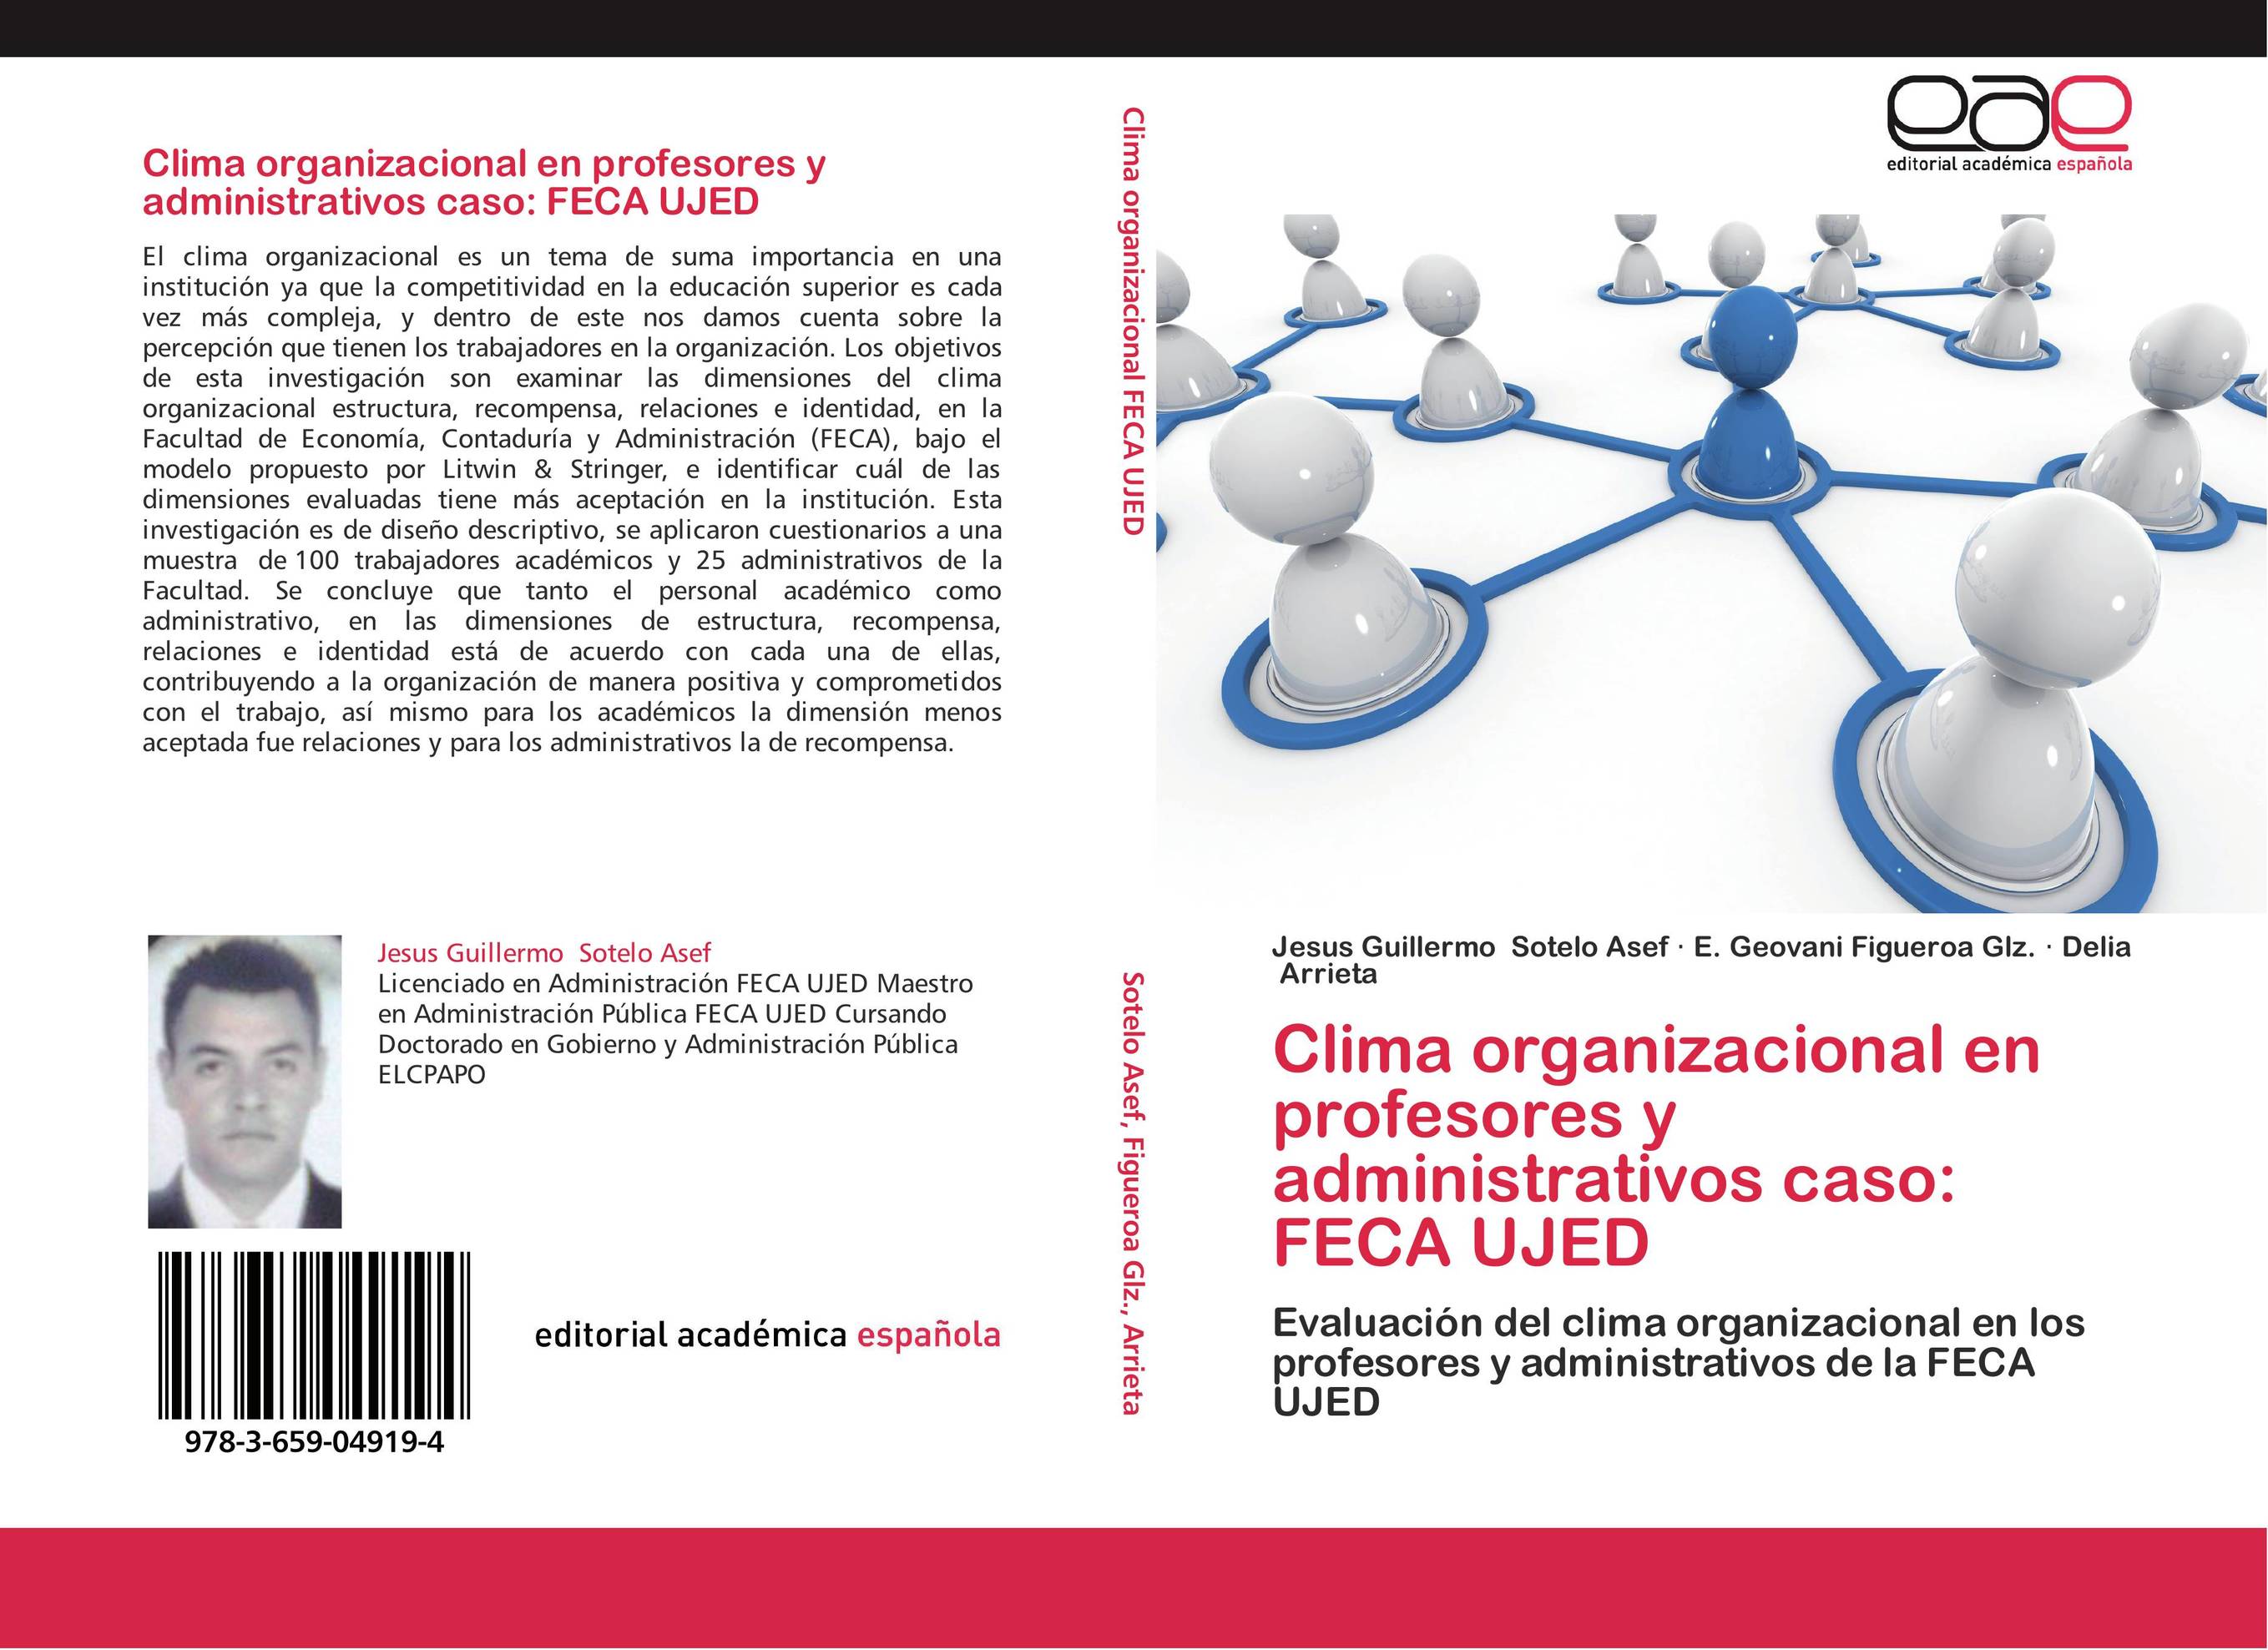 Clima organizacional en profesores y administrativos caso: FECA UJED